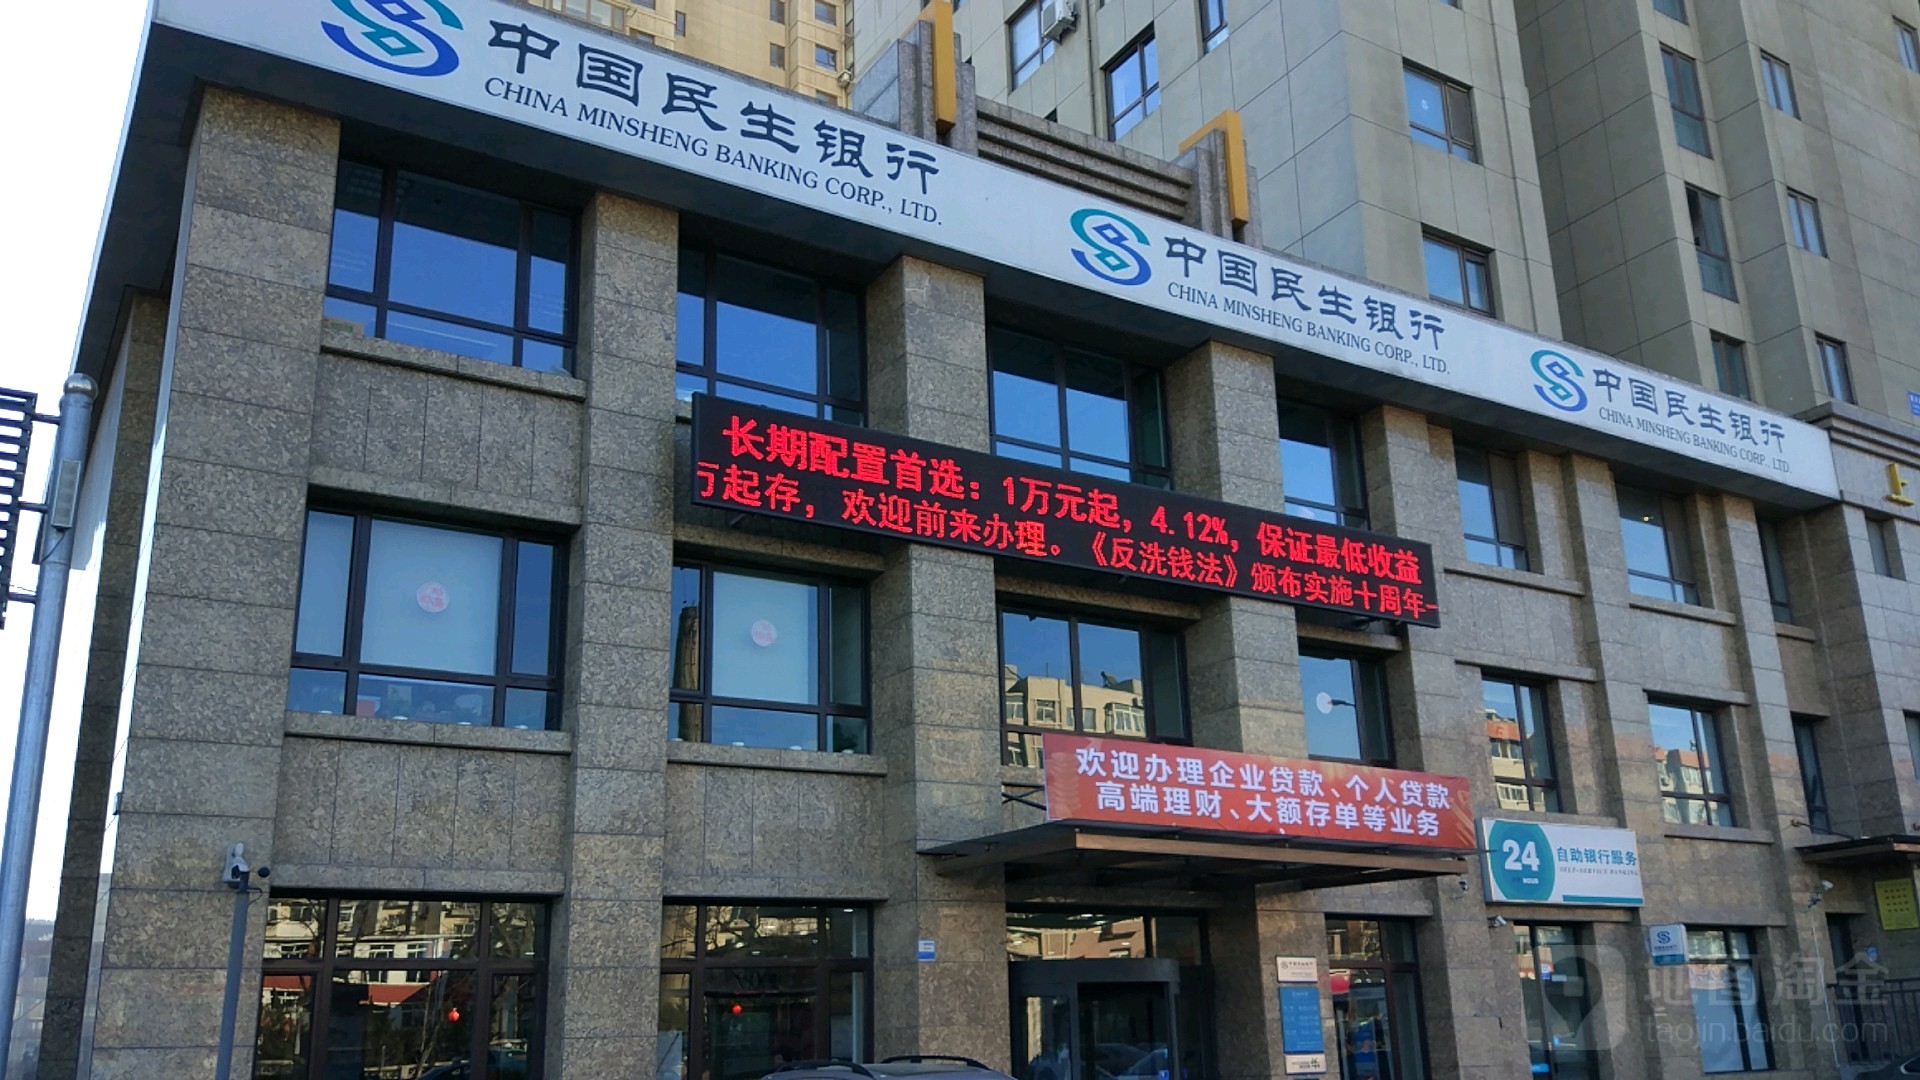 中国民生银行24小时自助银行((大连马栏广场支行),电话,路线,公交